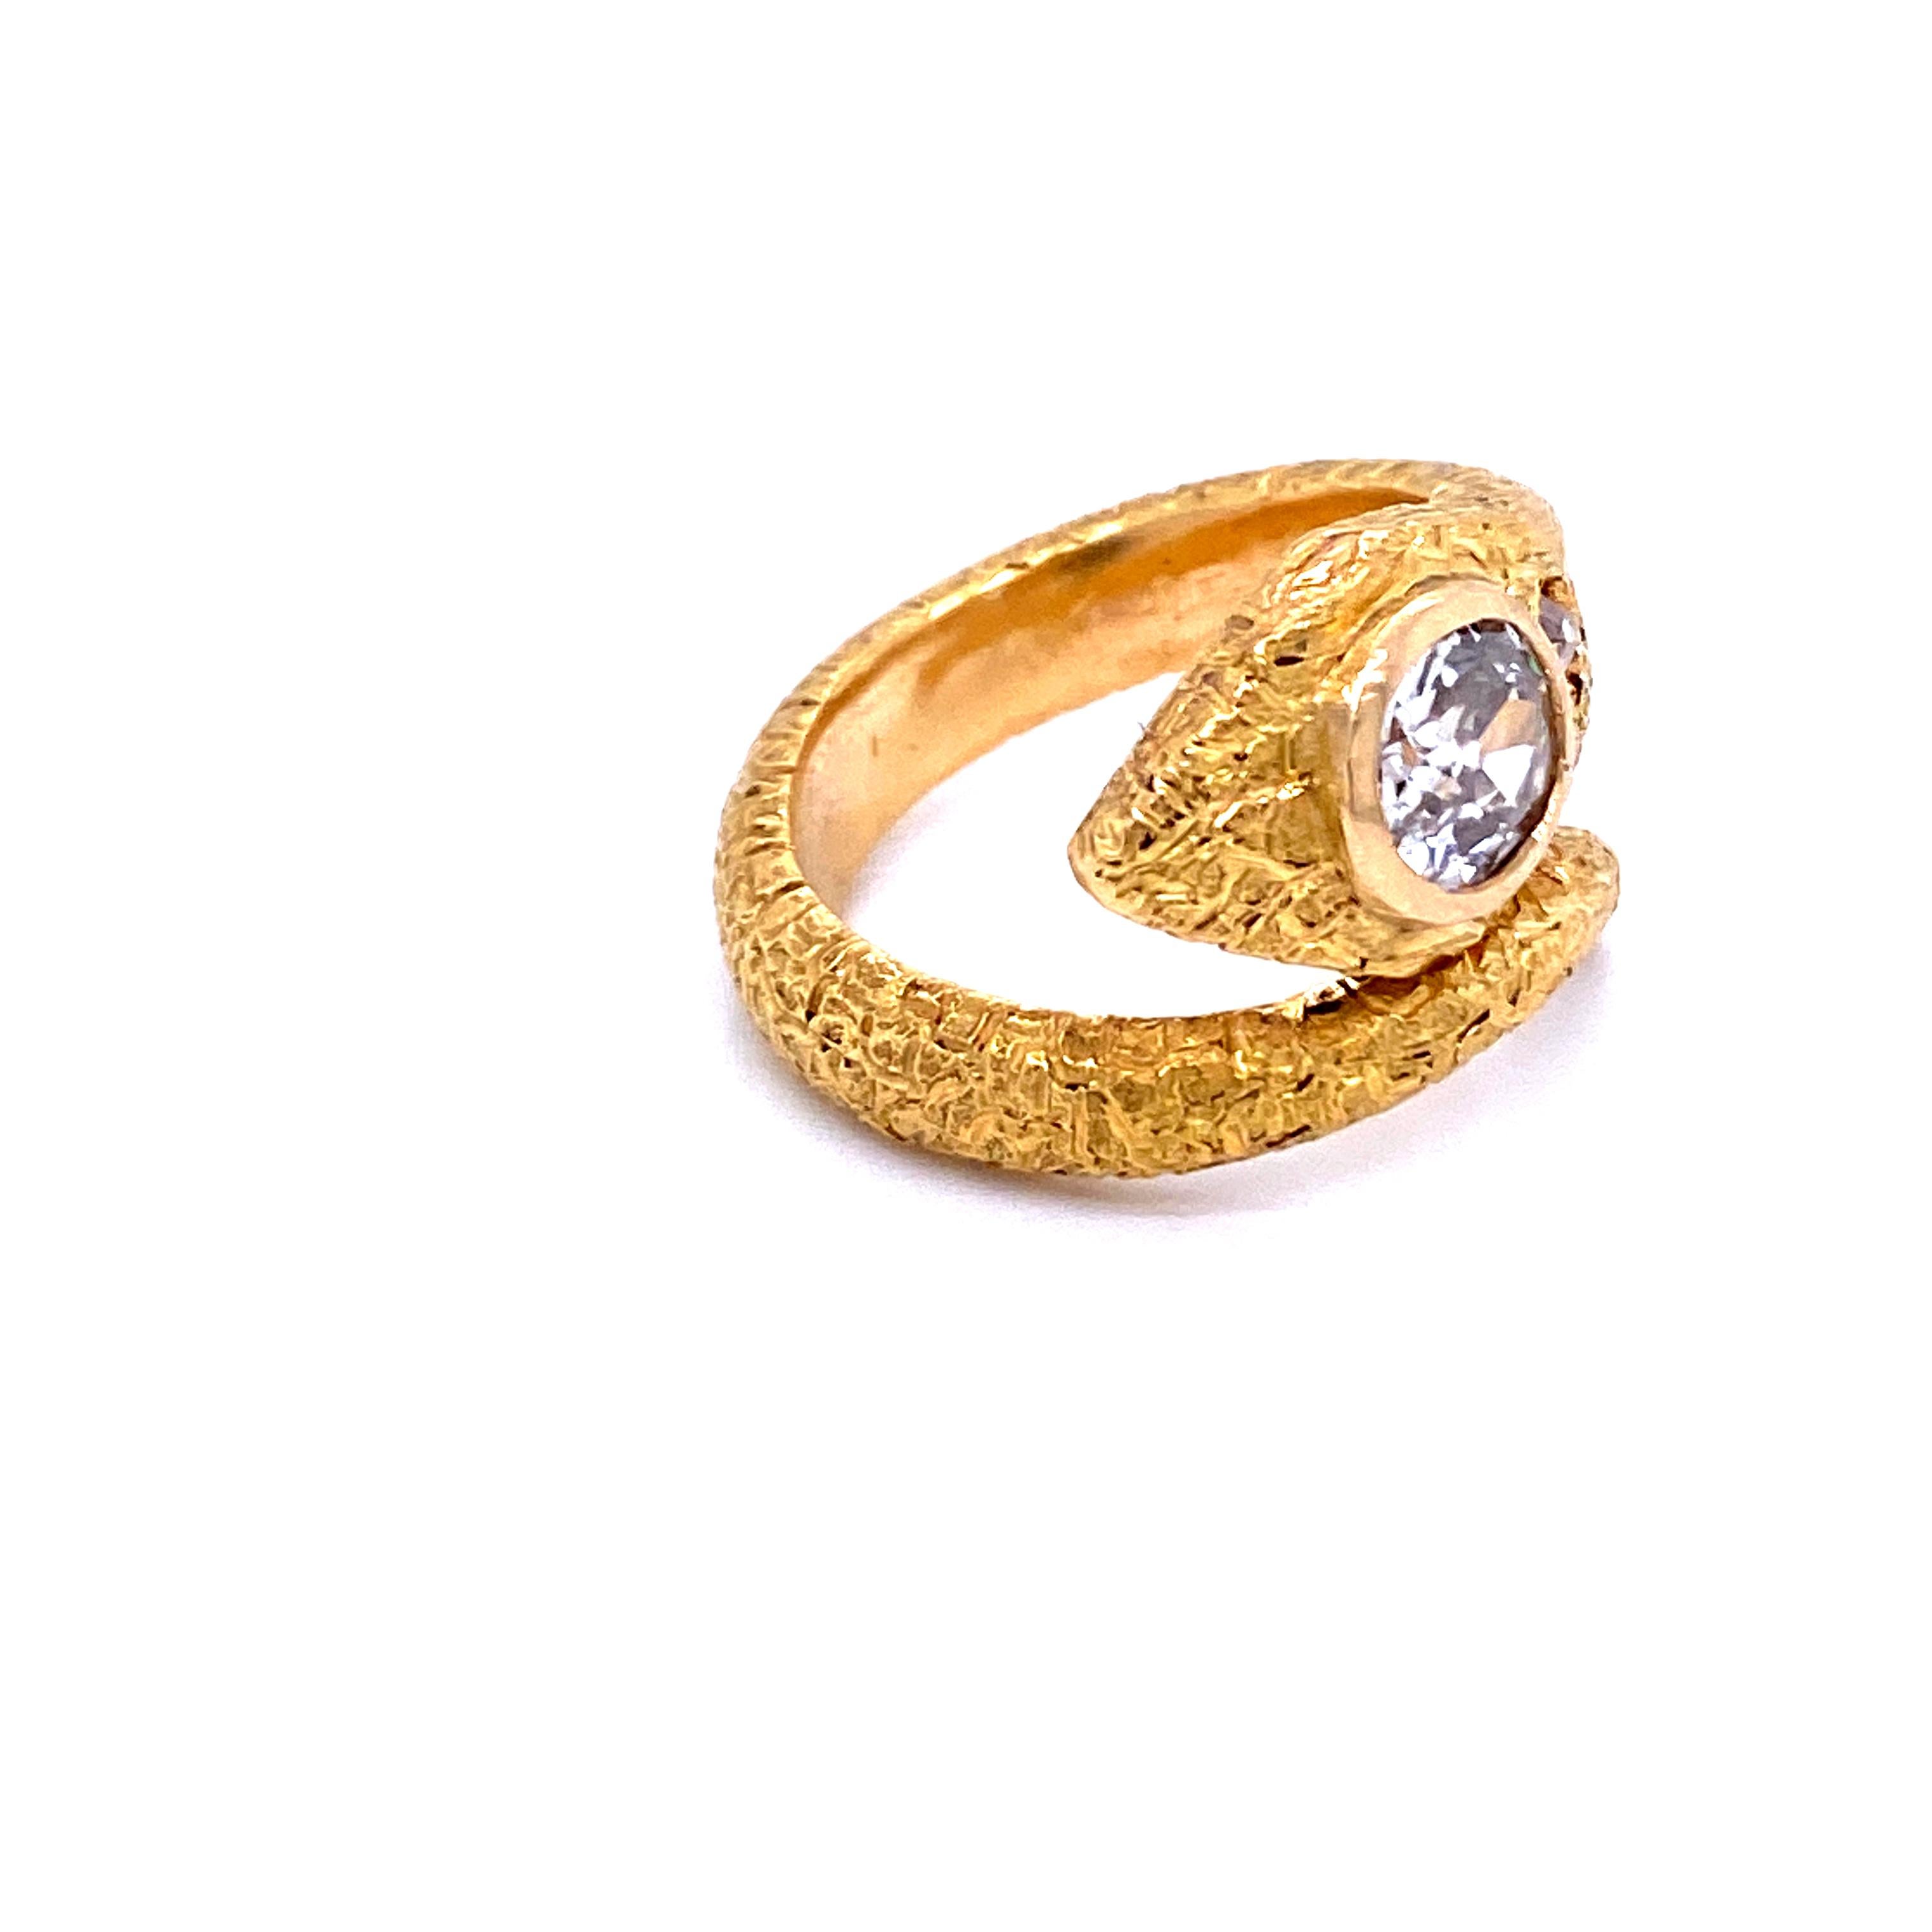 Women's or Men's Antique Diamond Coiled Snake Engraved Ring